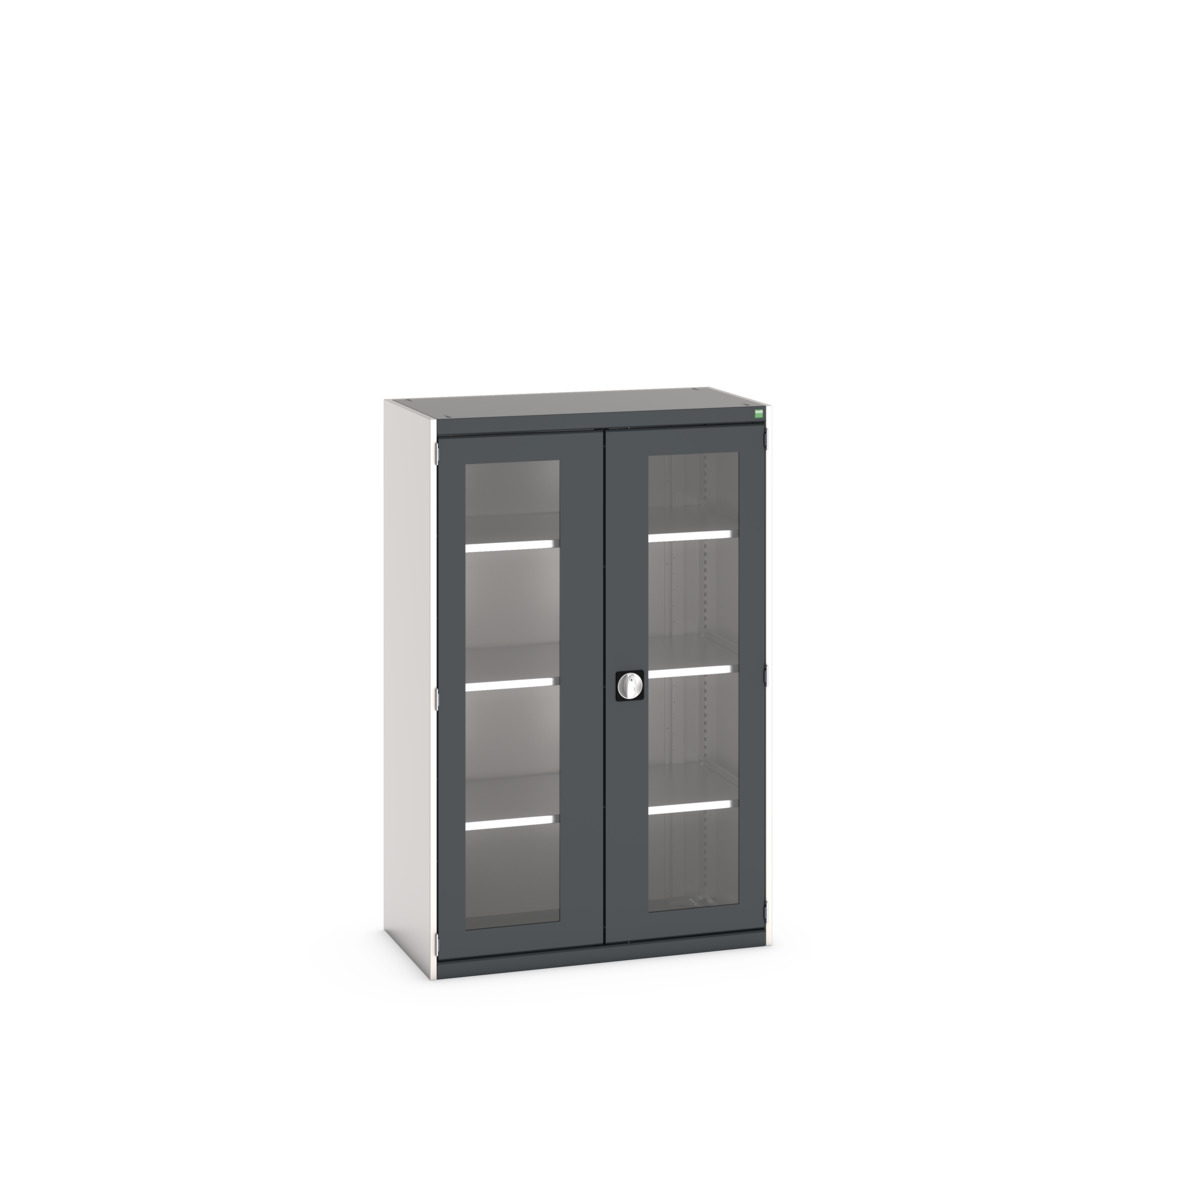 40013062.19V - cubio cupboard